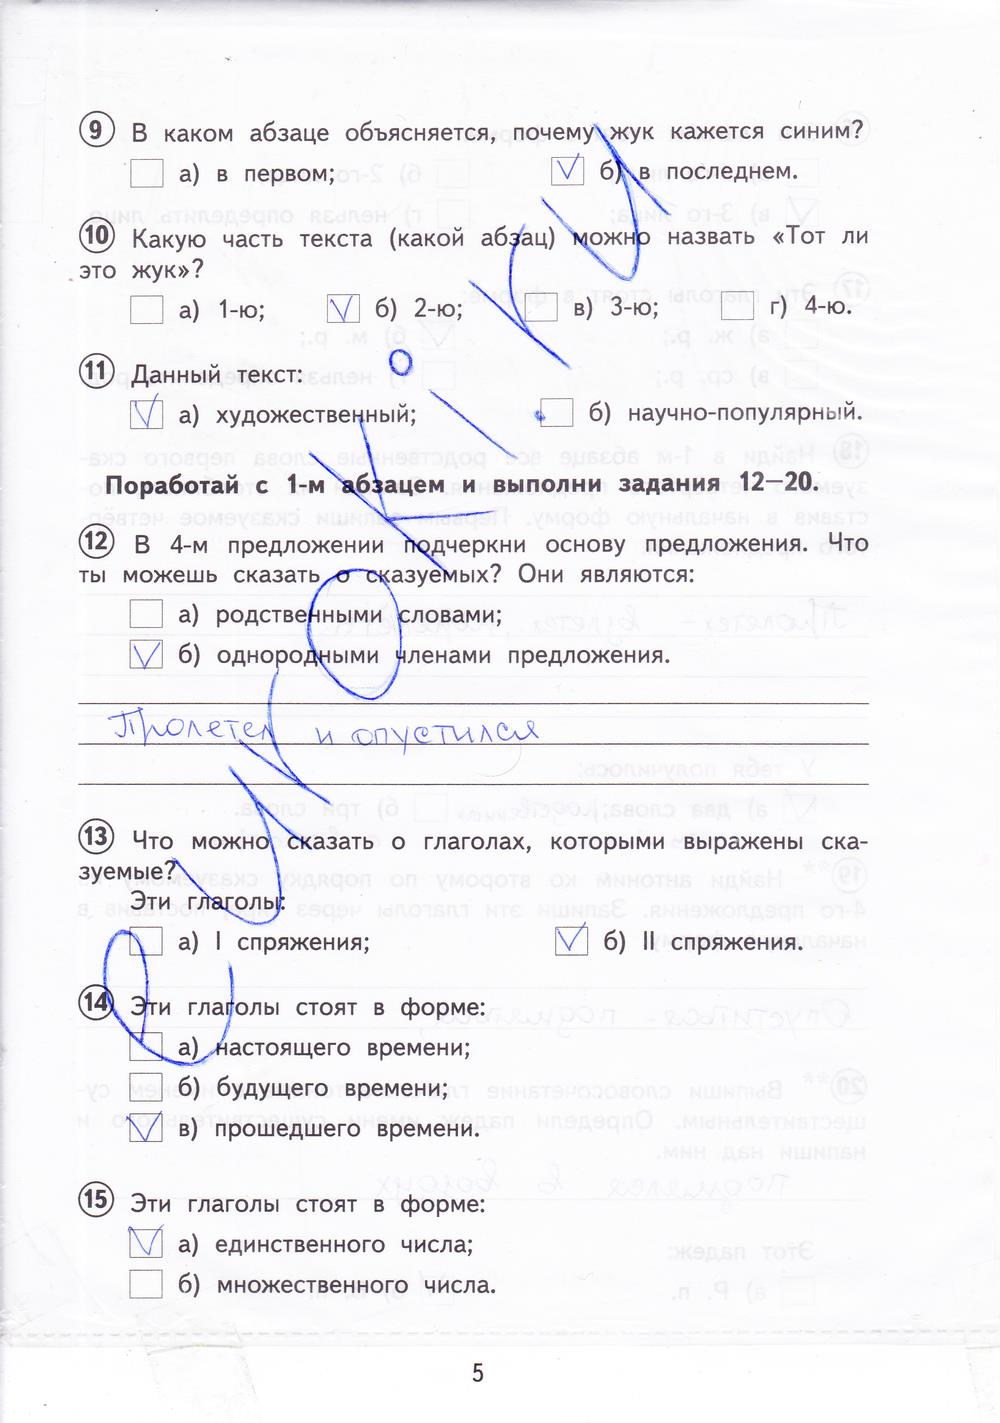 Обращение 8 класс проверочная работа. Русский язык тетрадь для проверочных работ 4 класс Лаврова ответы. Русский язык 4 класс проверочные работы стр 4-5.